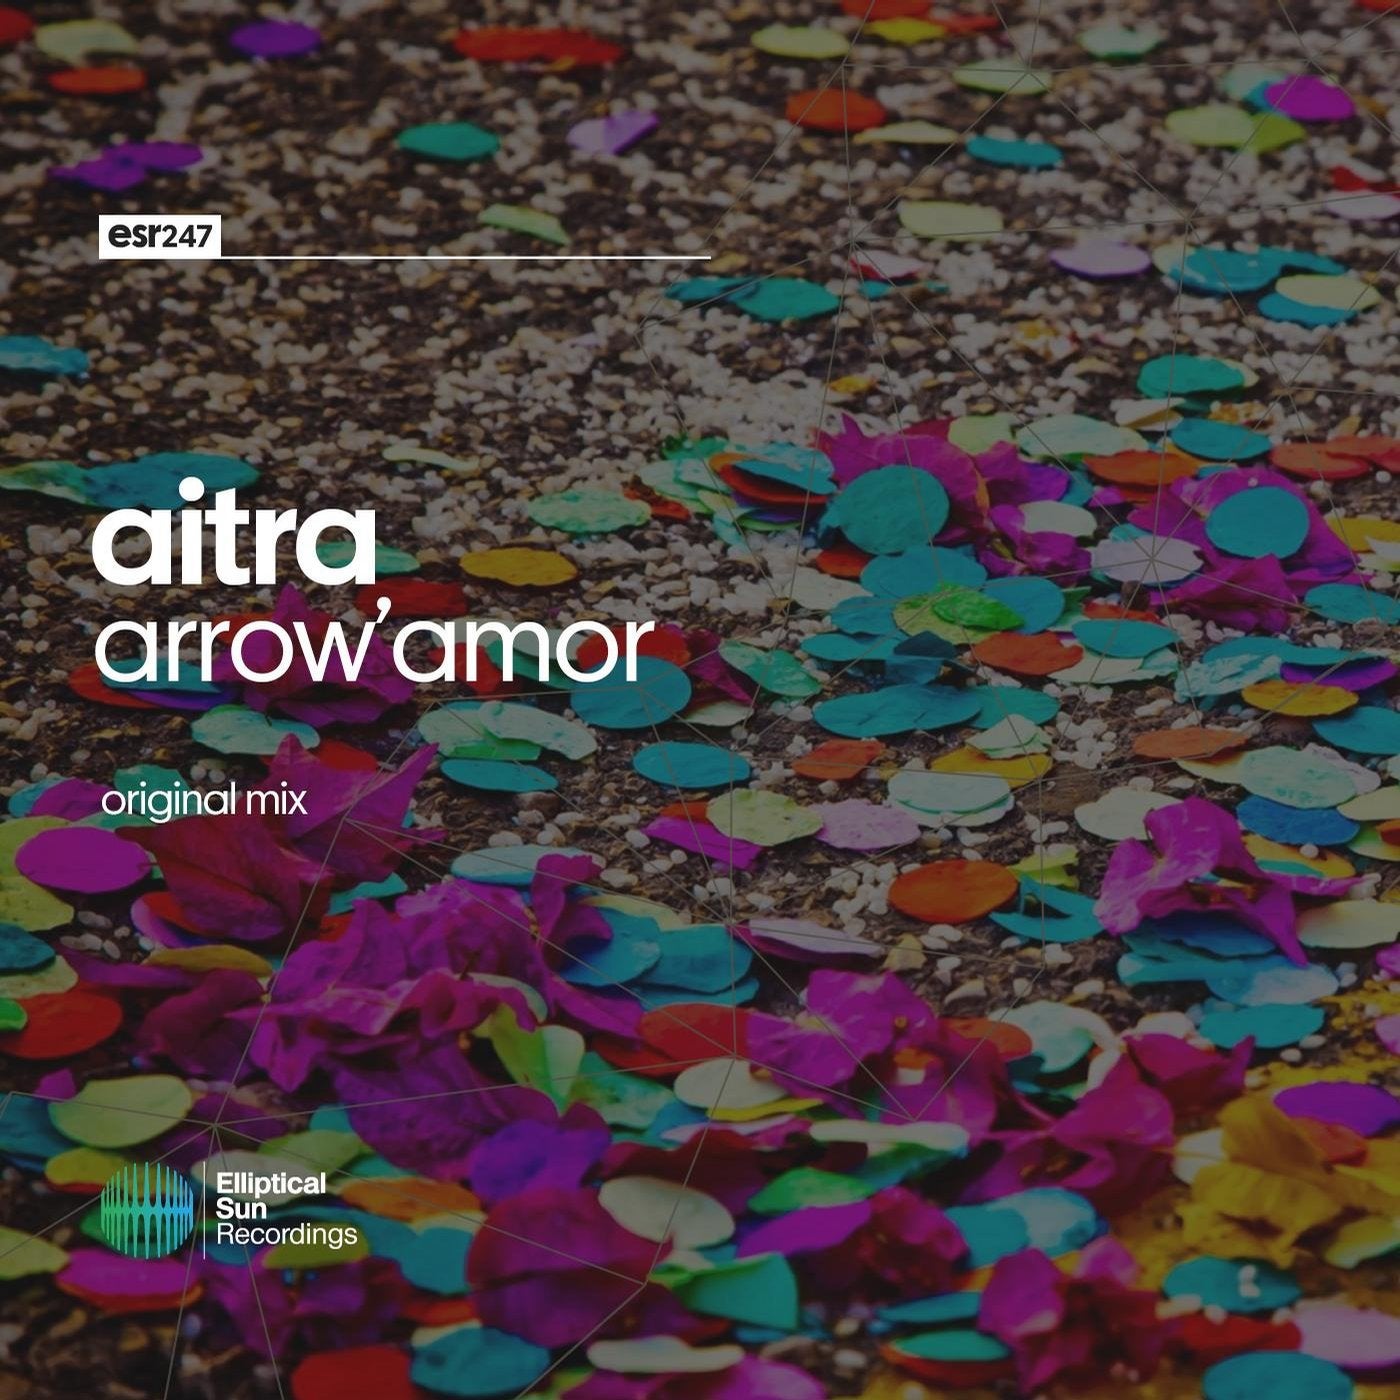 Arrow'Amor